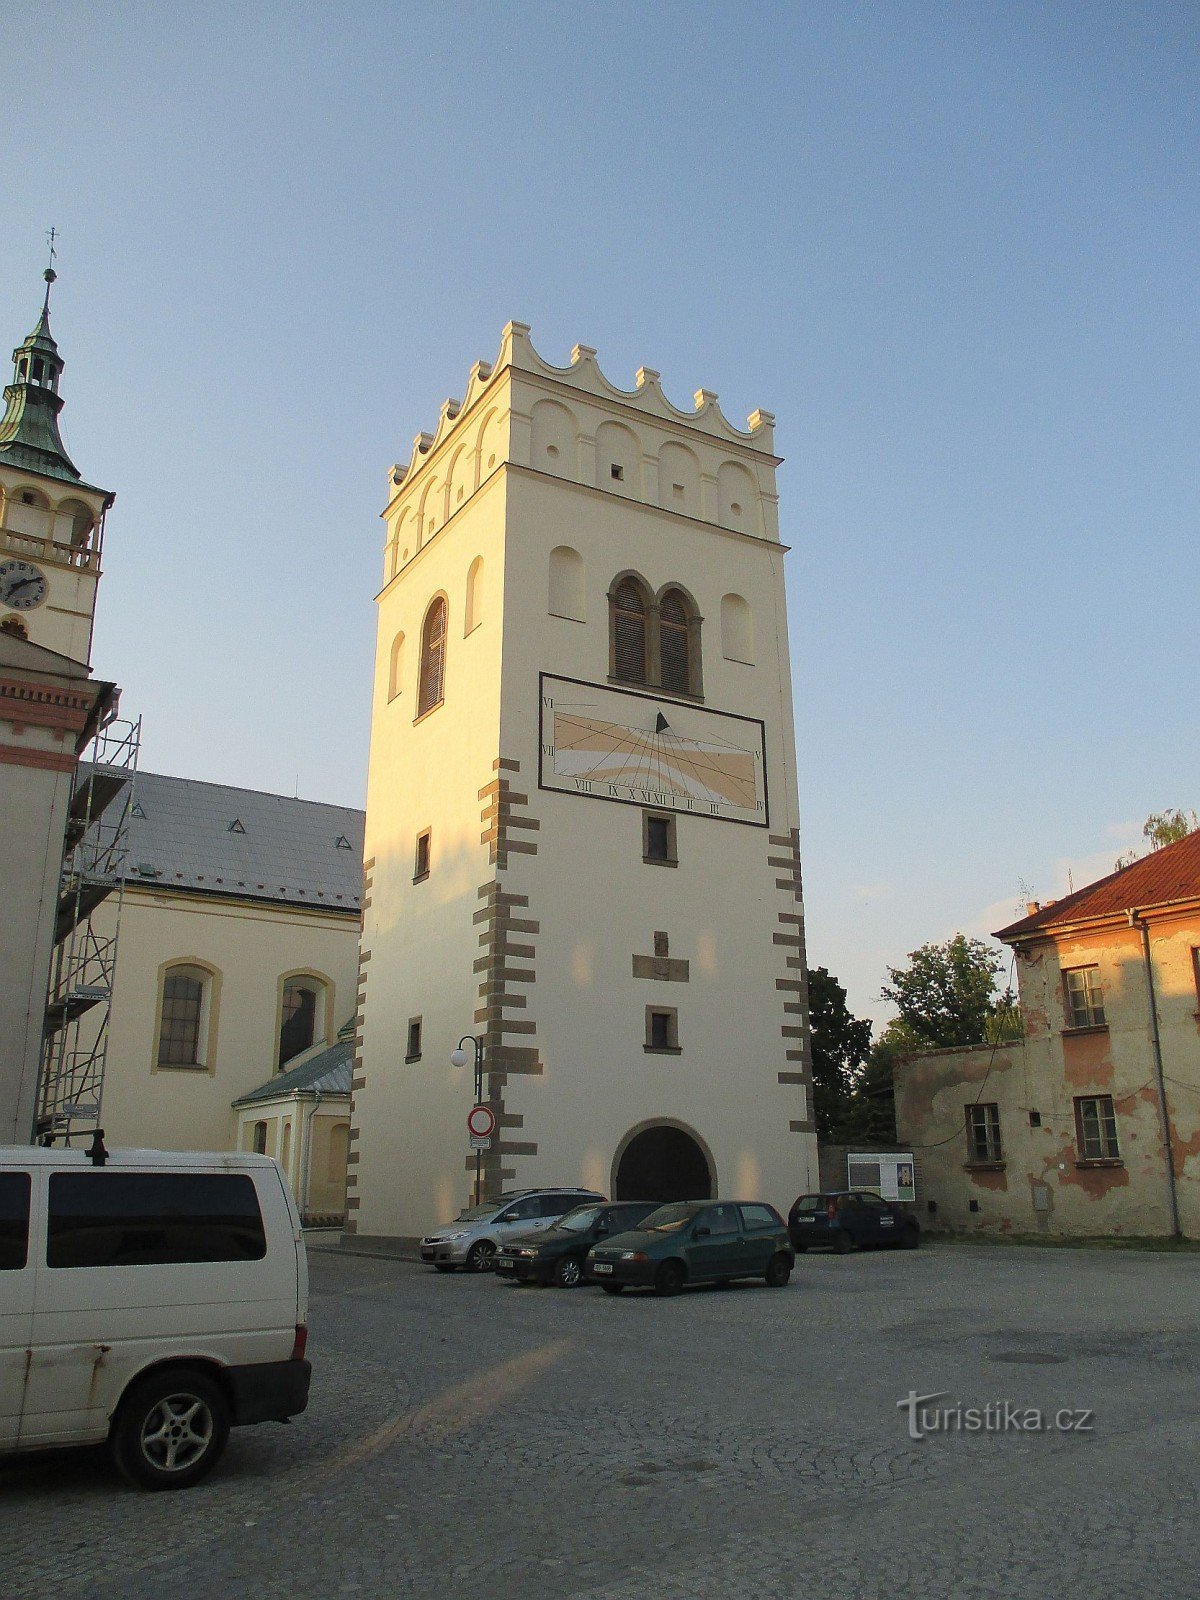 Lipník nad Bečvou - kommunalt kulturarvsreservat